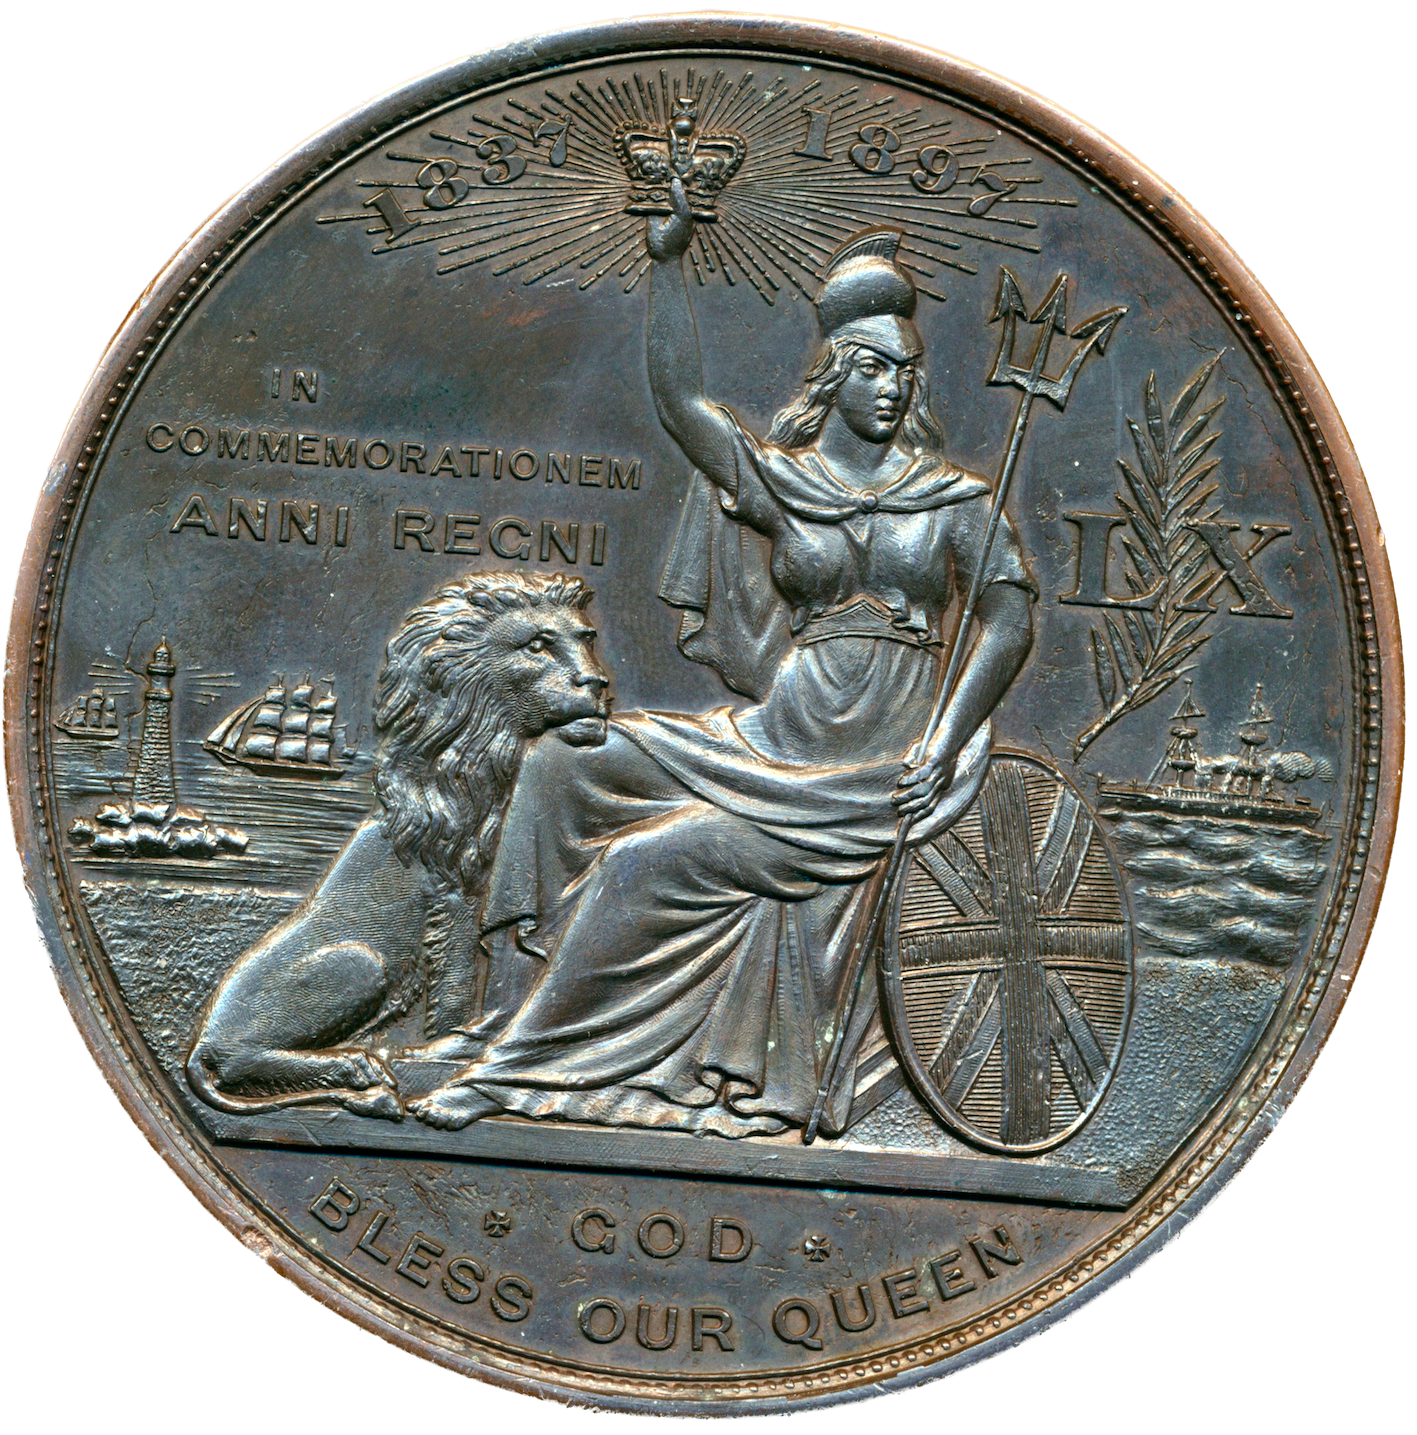 1897 Diamond Jubilee BHM 3581 E1814 78mm bronze medal by T Brock